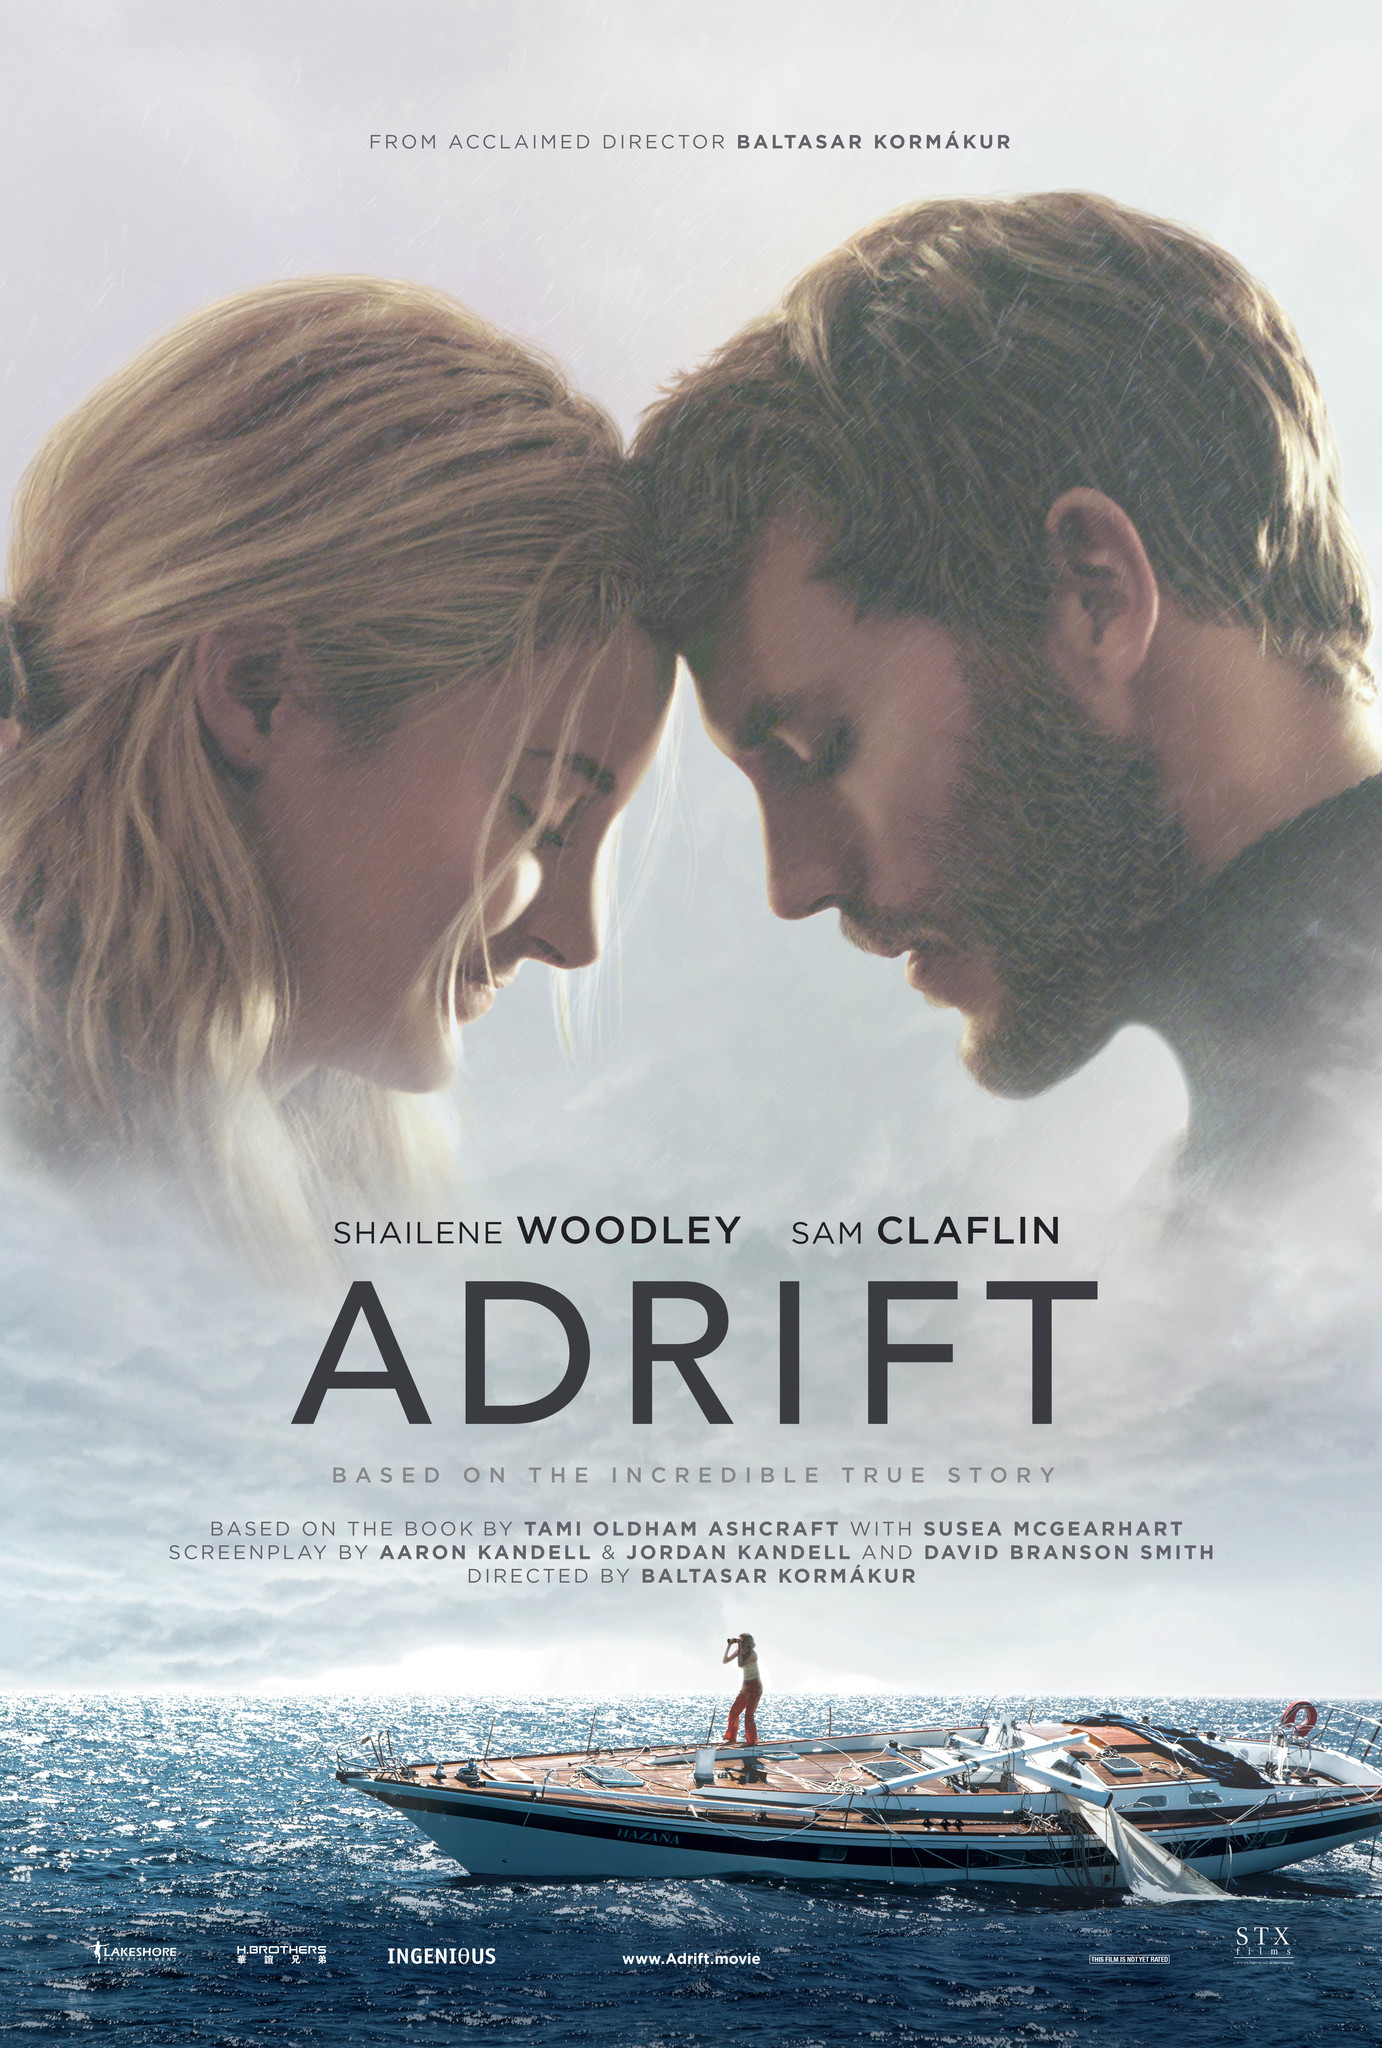 ดูหนังออนไลน์ Adrift 2018  รักเธอฝ่าเฮอร์ริเคน  เว็บดูหนังใหม่ออนไลน์ฟรี